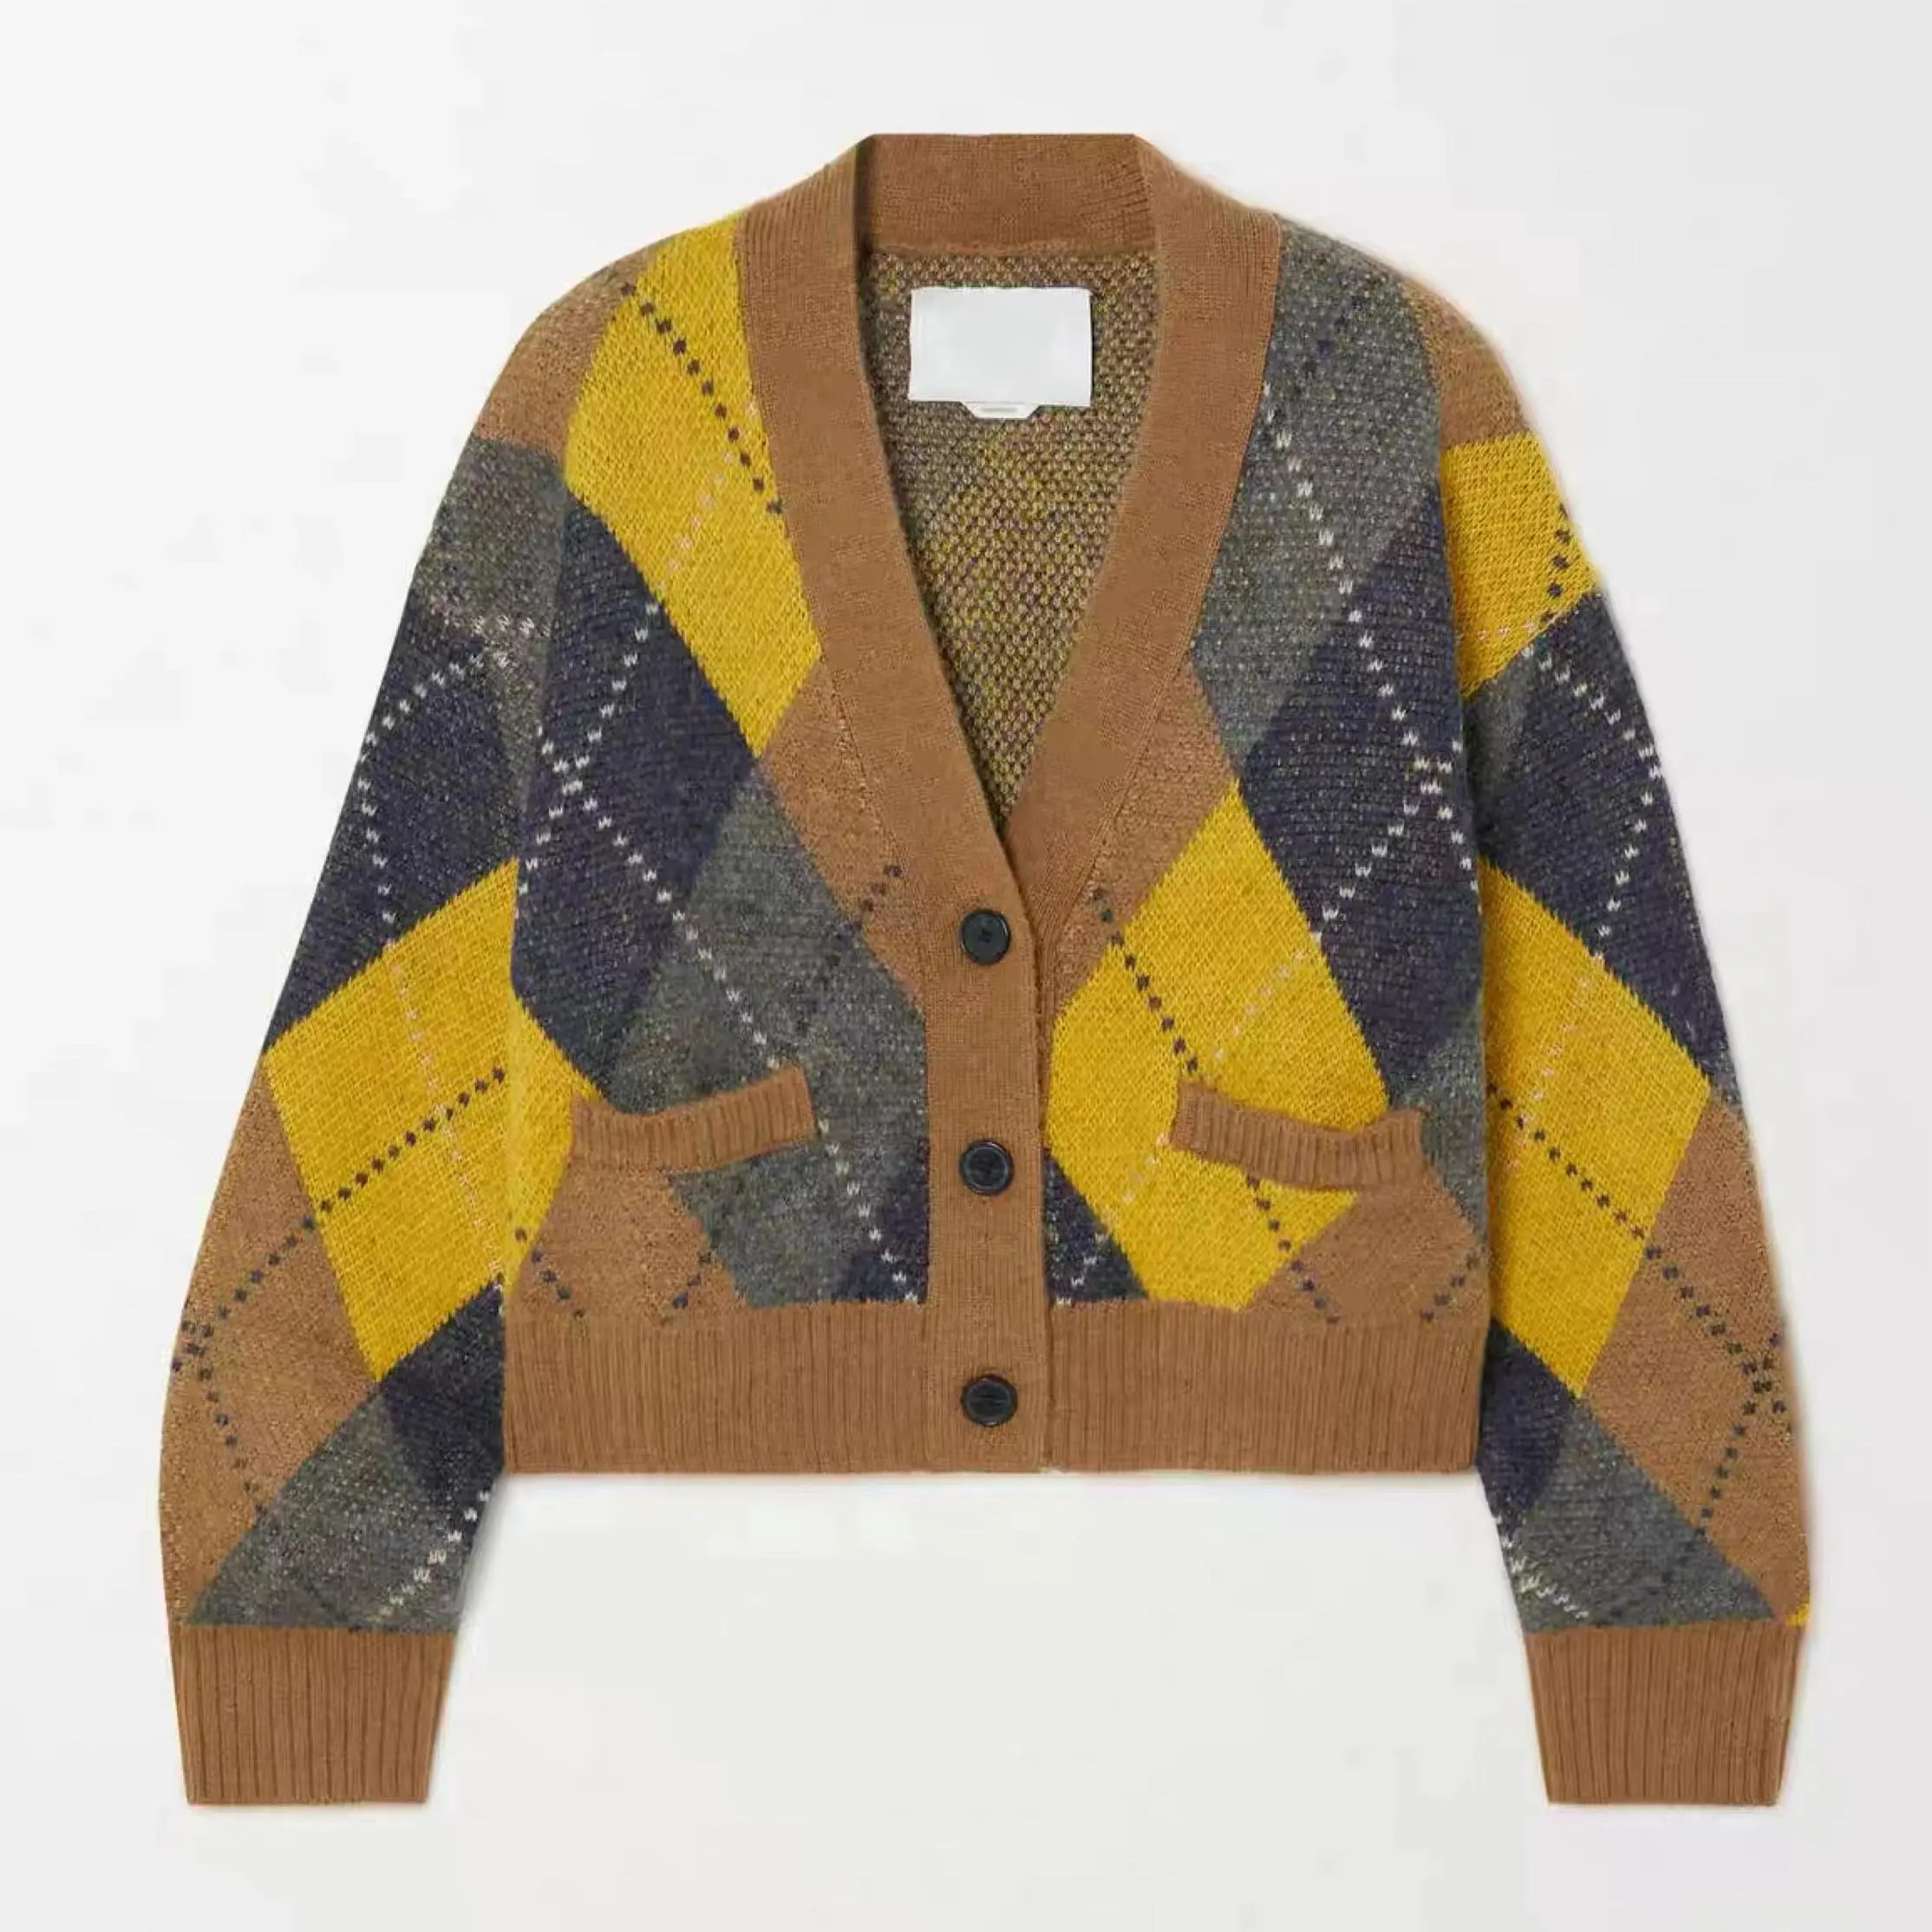 Custom Long Sleeve Knitted Winter Knitwear Geometric Designer Cardigan Women Sweater